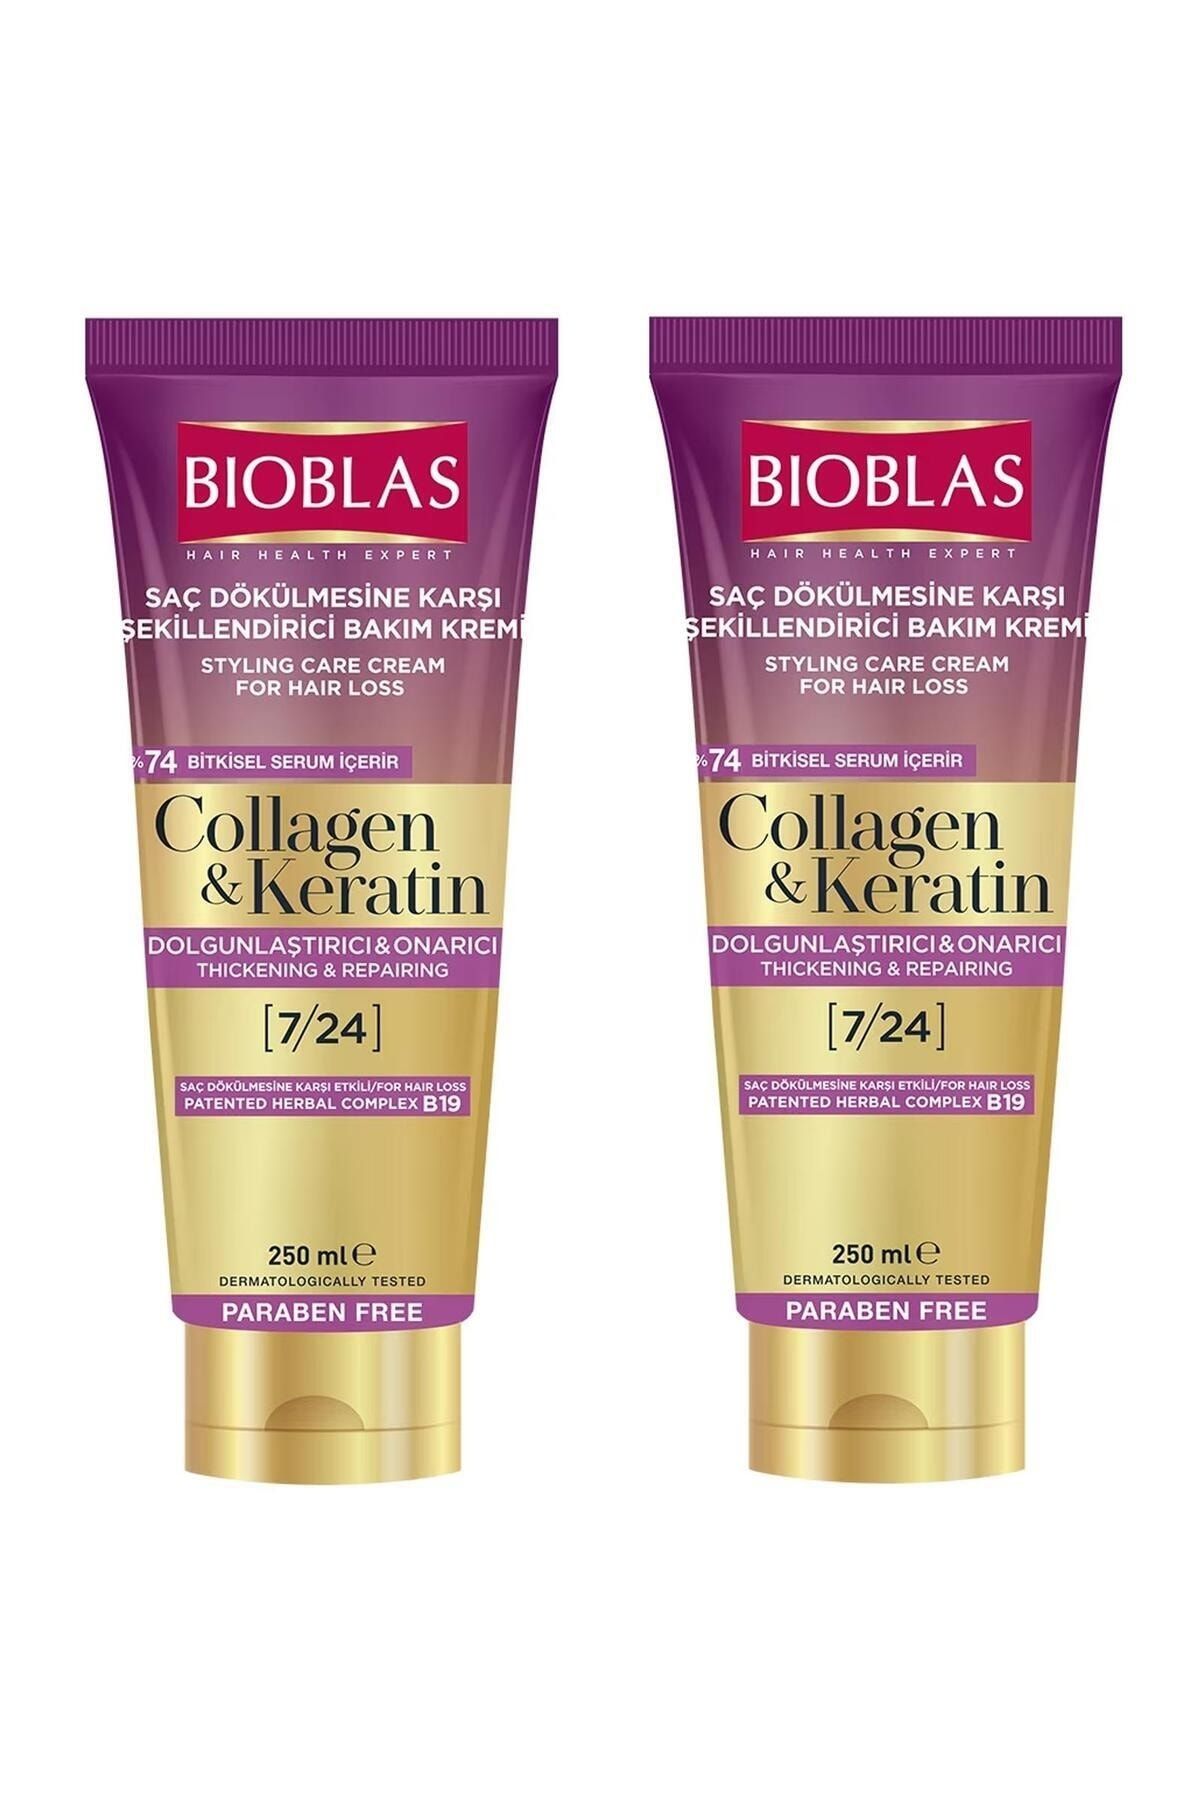 Bioblas Collagen Ve Keratin Saç Dökülmesine Karşı Şekillendirici Bakım Kremi 250 ml 2 Adet